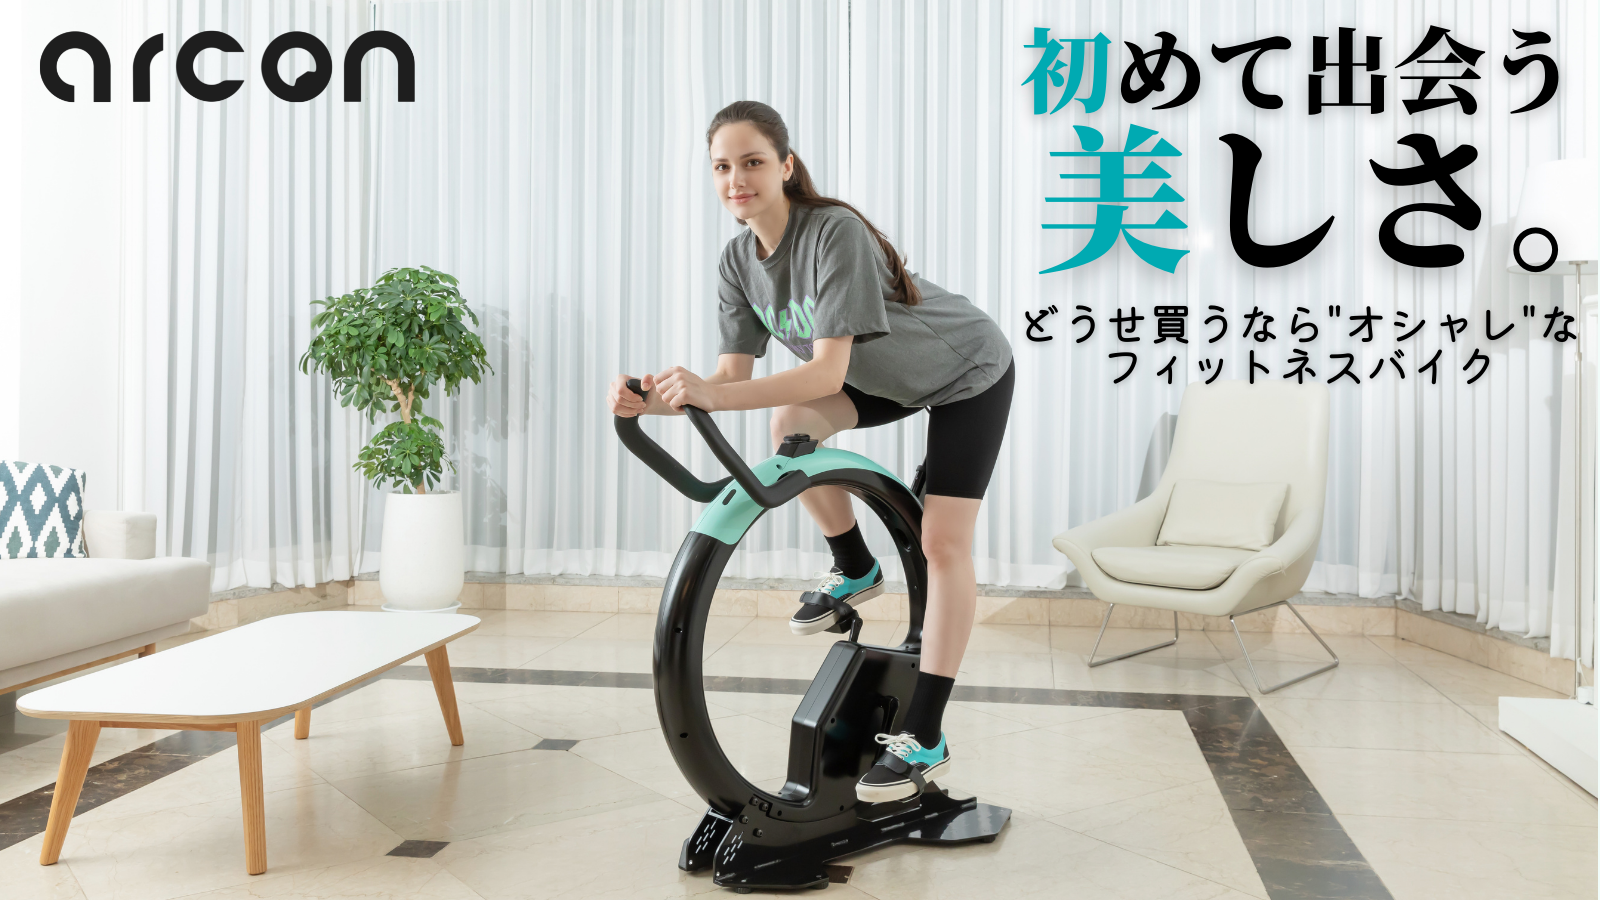 デザイン性を重視したフィットネスバイク“arcon”先行予約販売を「Makuake」にて4月29日まで実施中！ - 記事詳細｜Infoseekニュース